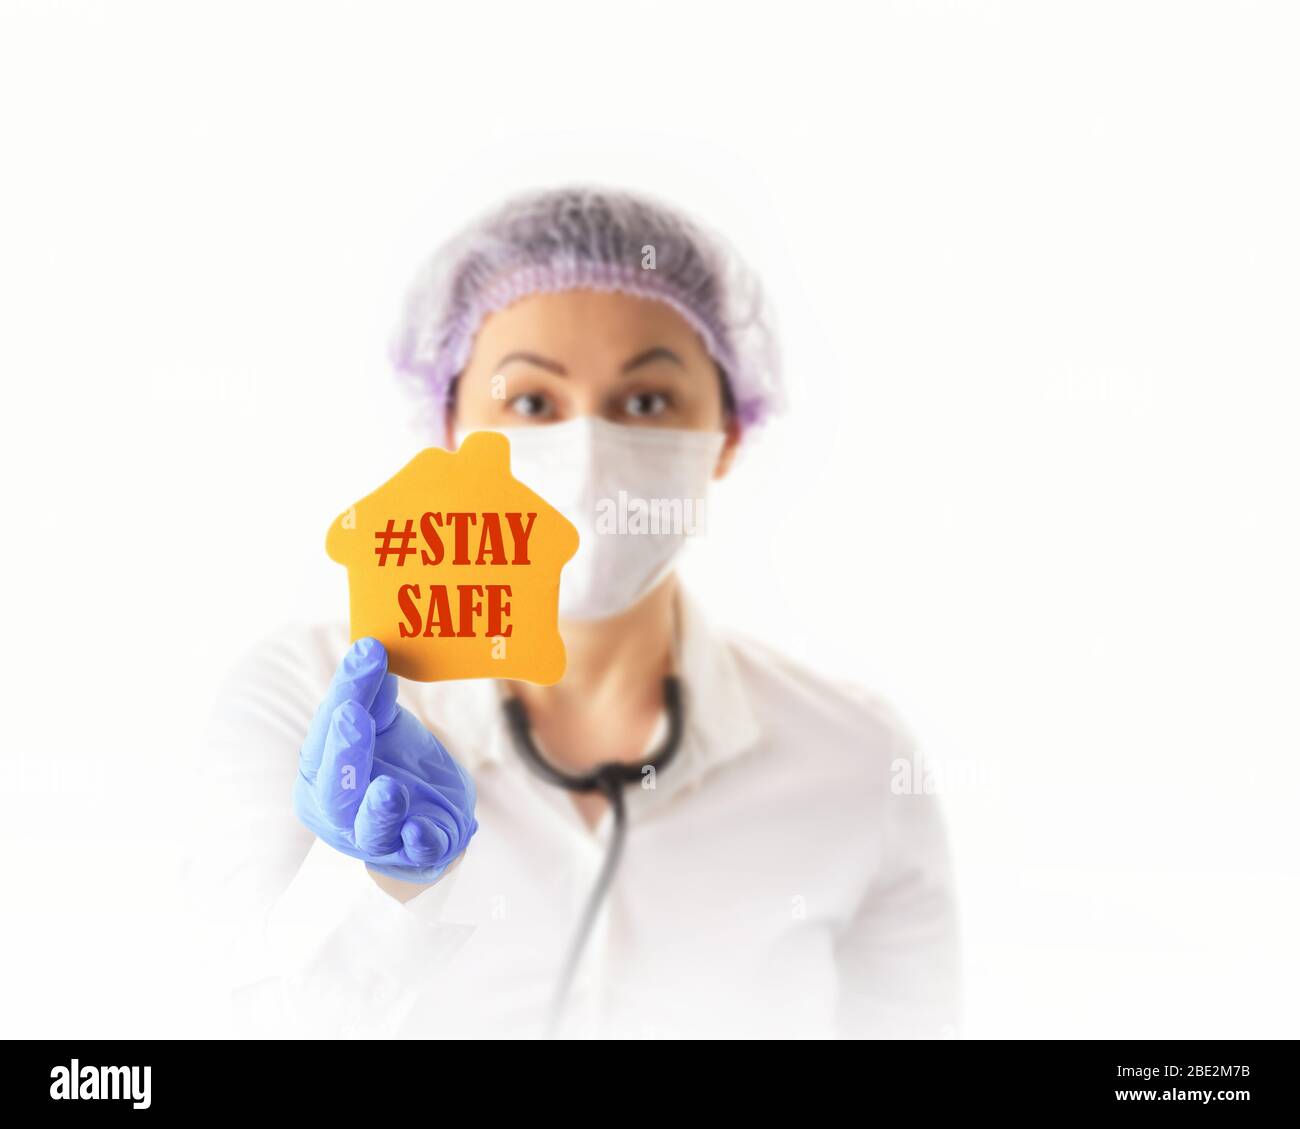 Infermiere o medico femminile in maschera protettiva medica che mostra la sicurezza. Prevenzione e Stop coronavirus infection Concept. Foto Stock